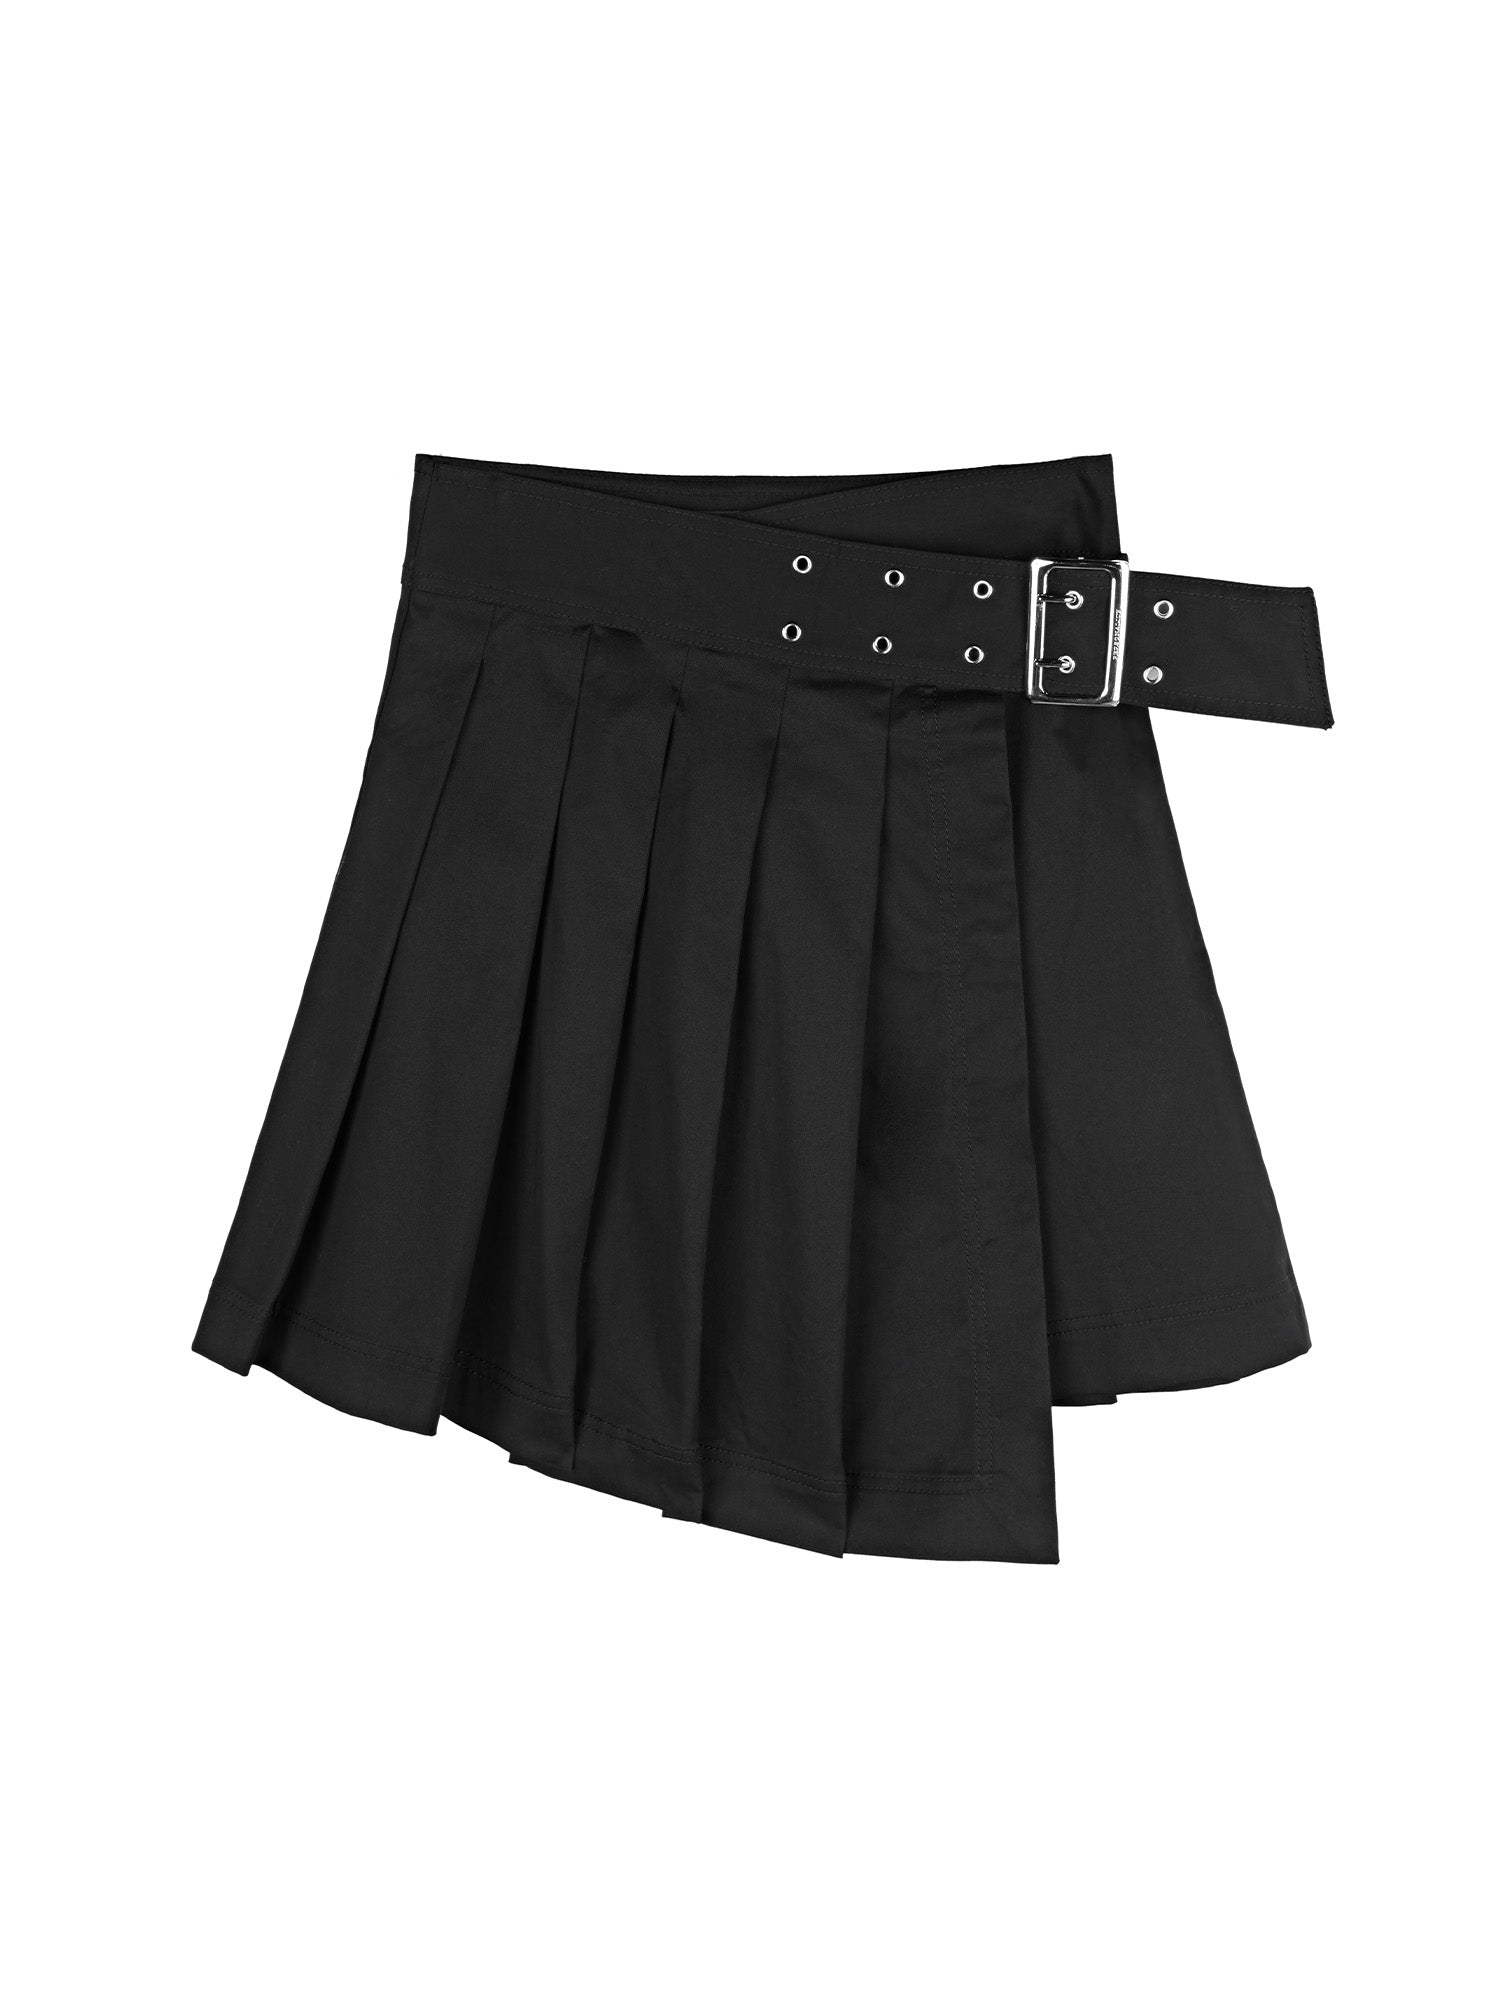 Women's Casual High Waist A Line Pleated Mini Skirt - S·DEER